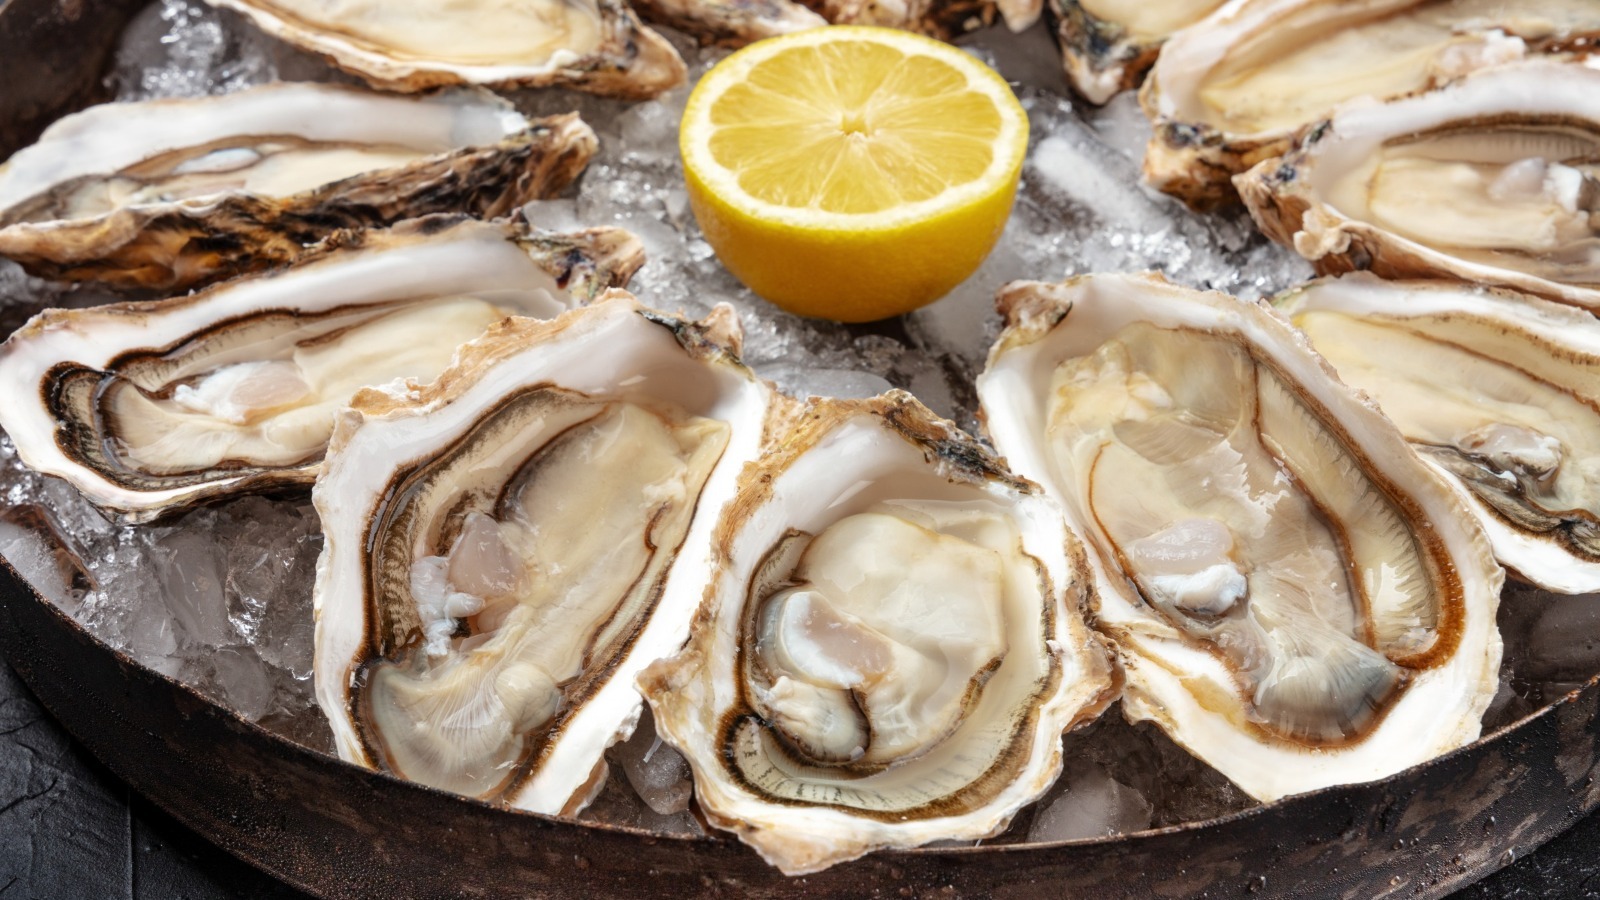 See rare, vintage photos of Louisiana oyster farming